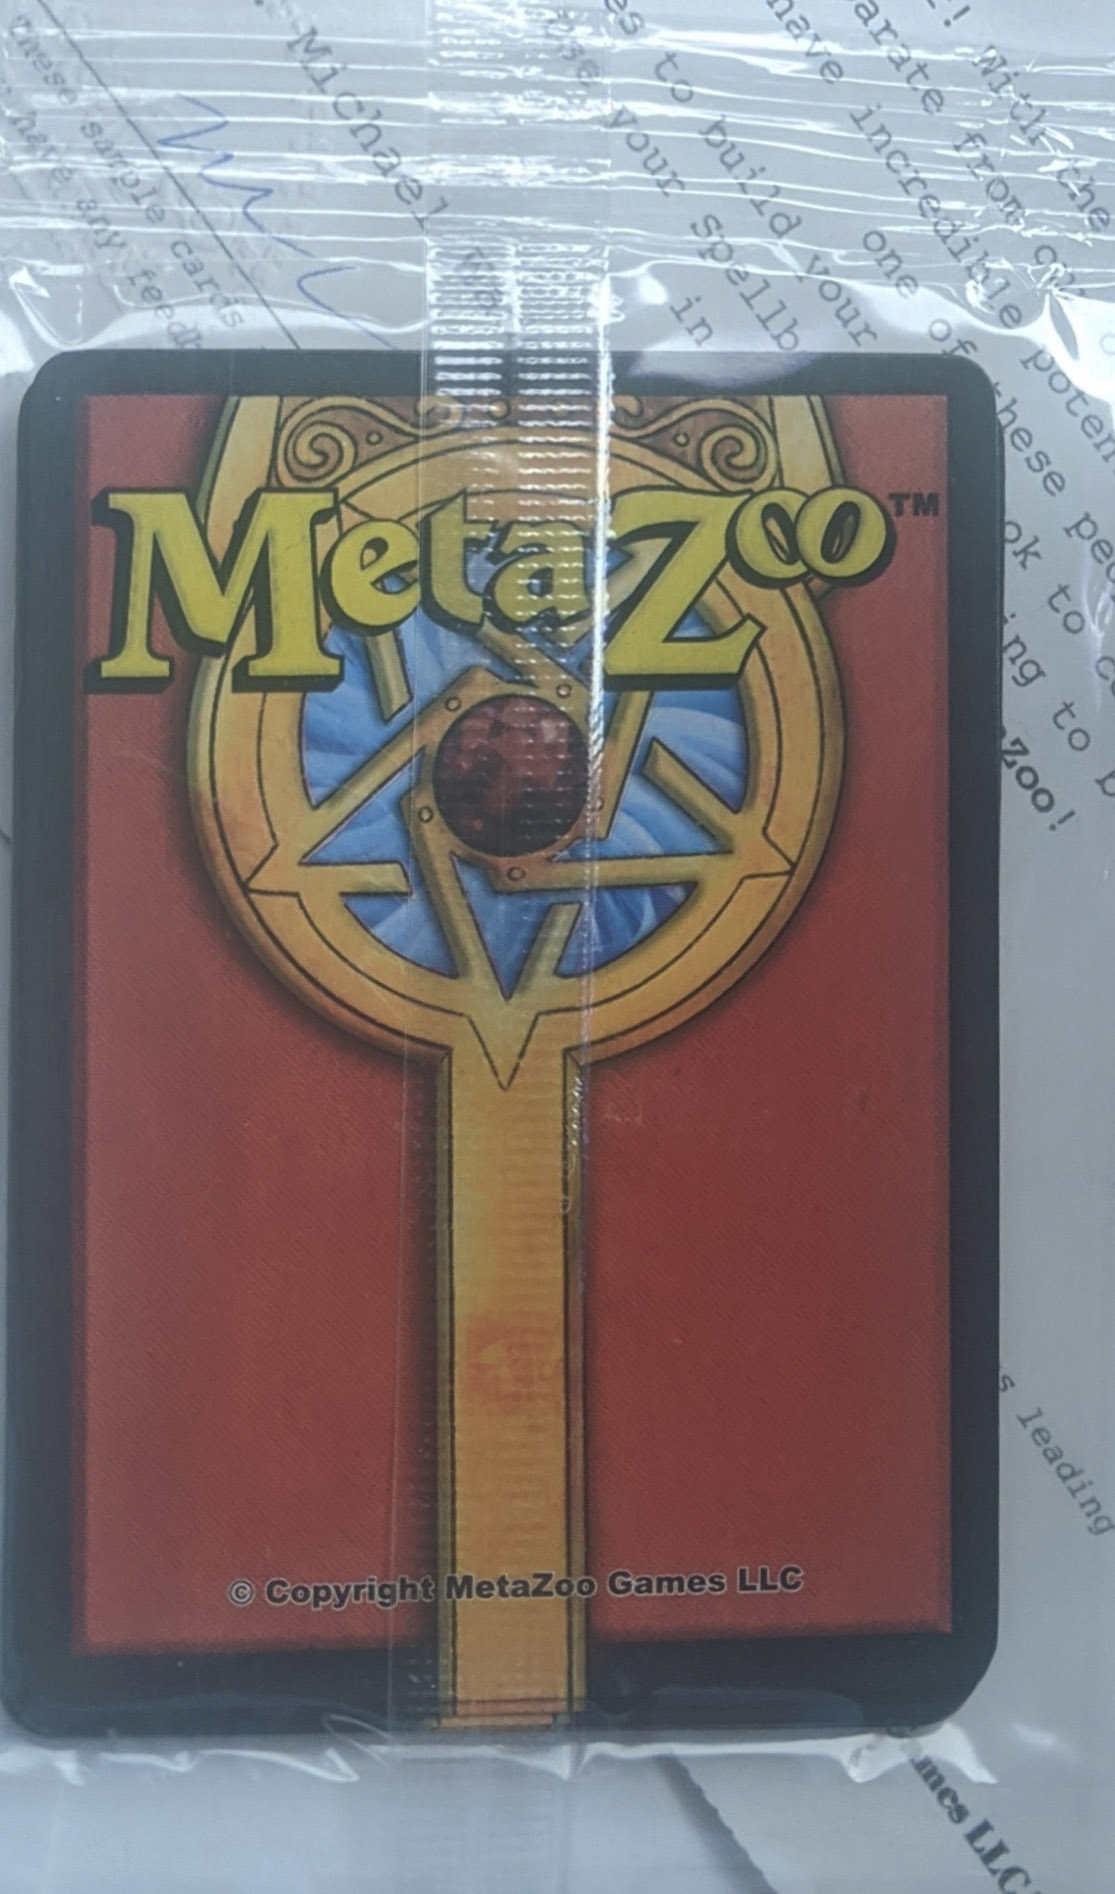 MetaZoo Sample cards - Clear packaging 2